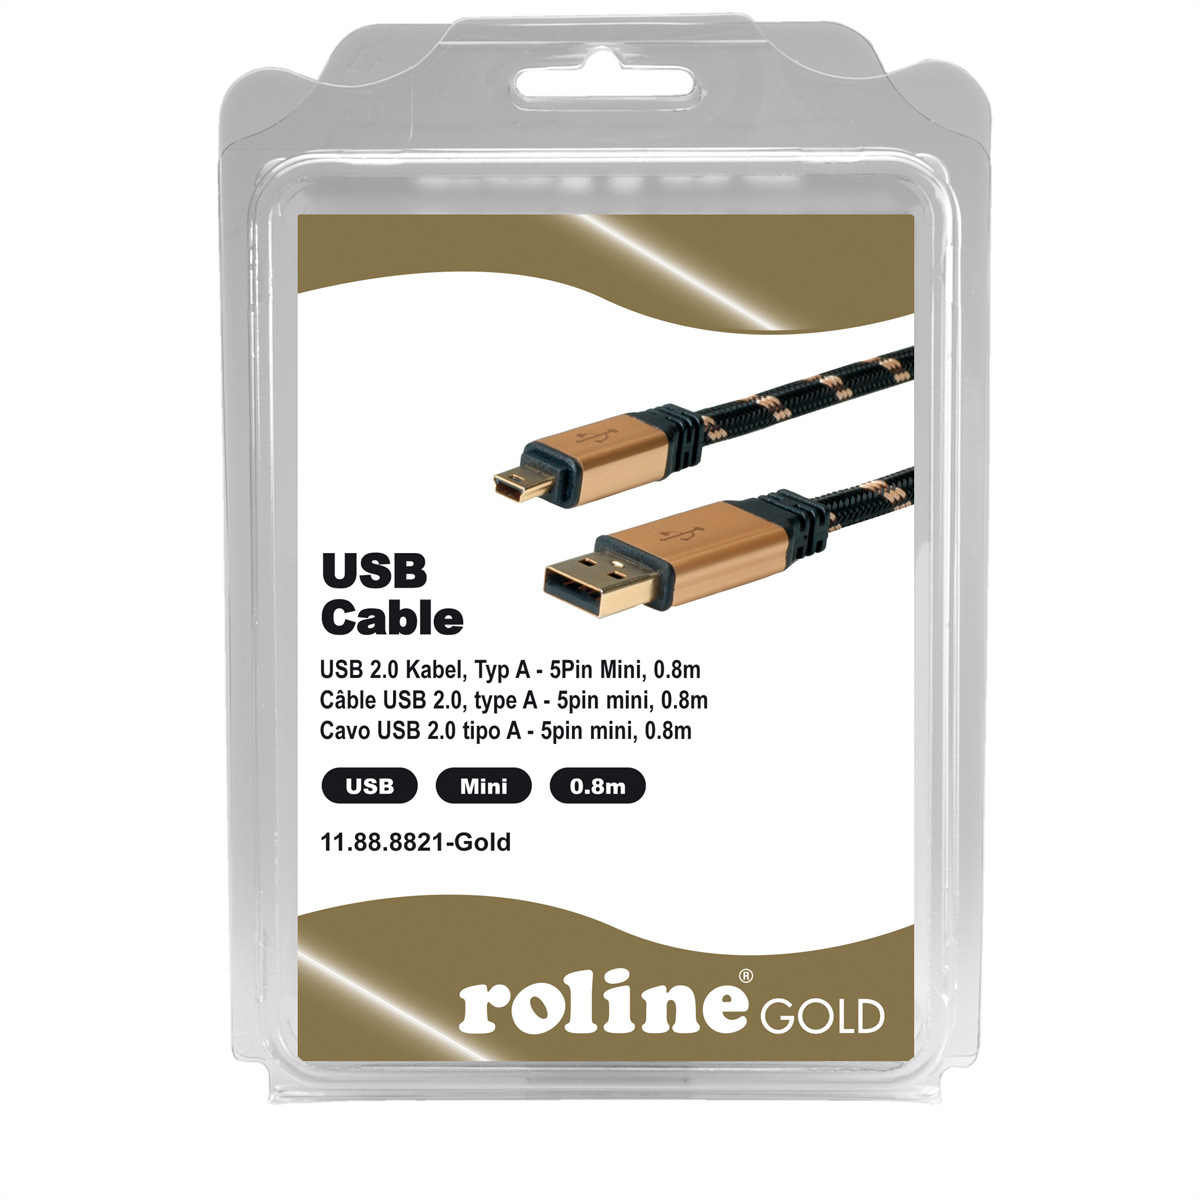 - 2.0 Mini USB A ROLINE 5-Pin USB GOLD Mini Kabel Typ 2.0 Kabel,